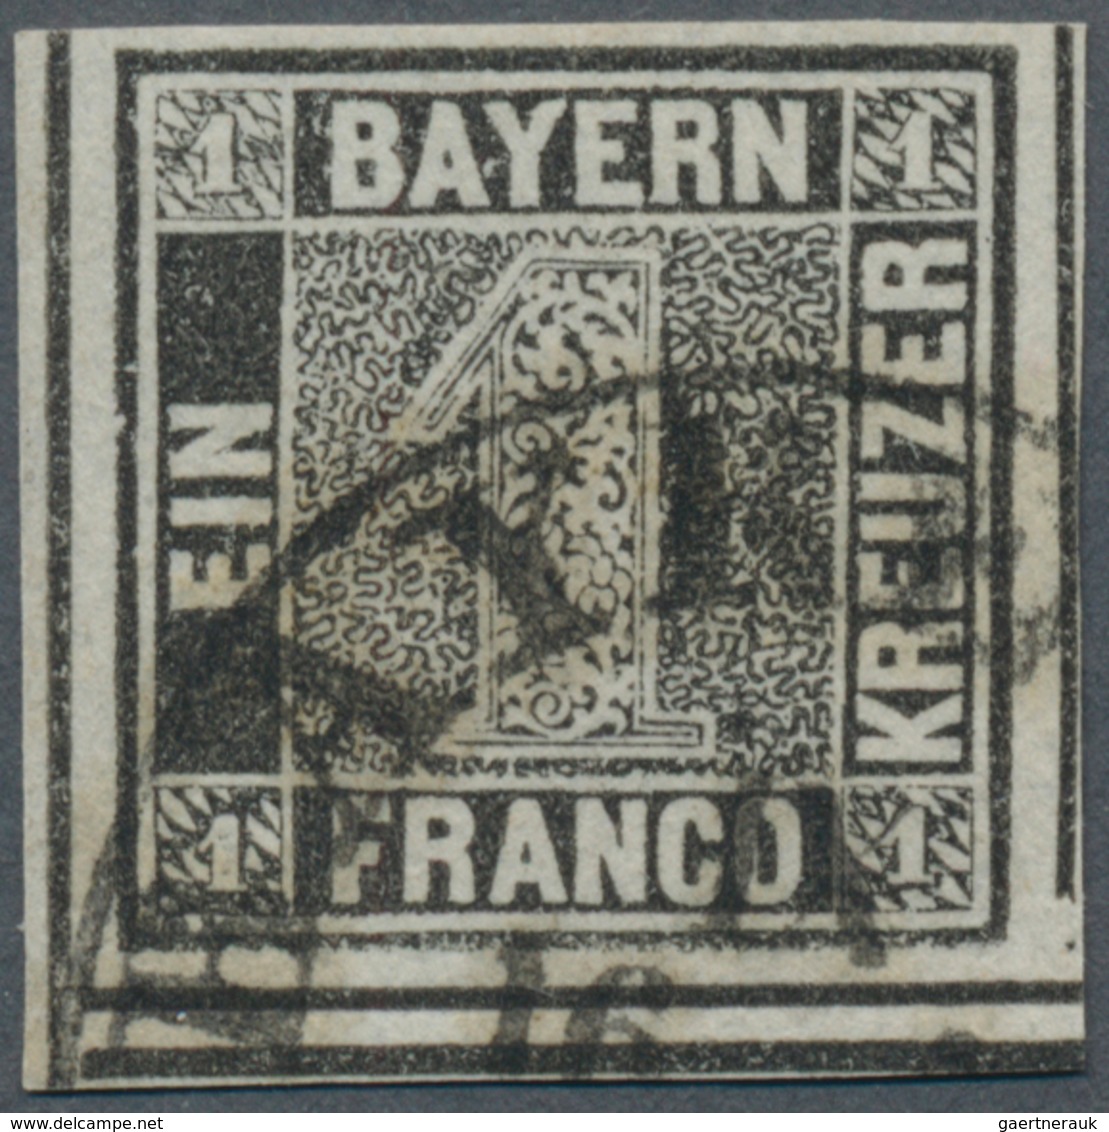 Bayern - Marken Und Briefe: 1849, 1 Kreuzer Schwarz, Platte 1, Zwei Waagerechte TRENNUNGSLINIEN UNTE - Altri & Non Classificati